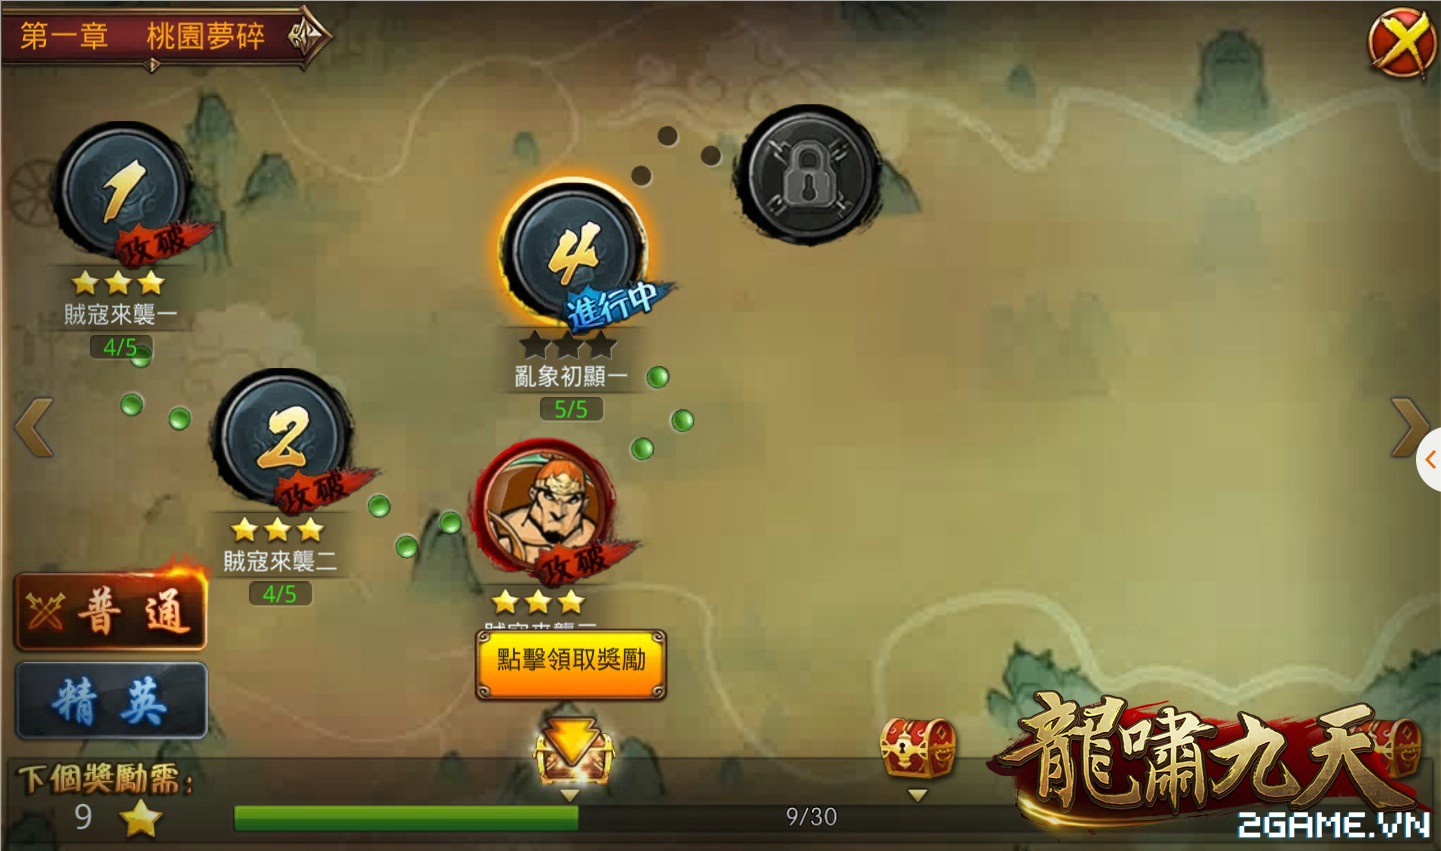 2game_hinh_anh_game_long_tuong_mobile_6.jpg (1441×851)